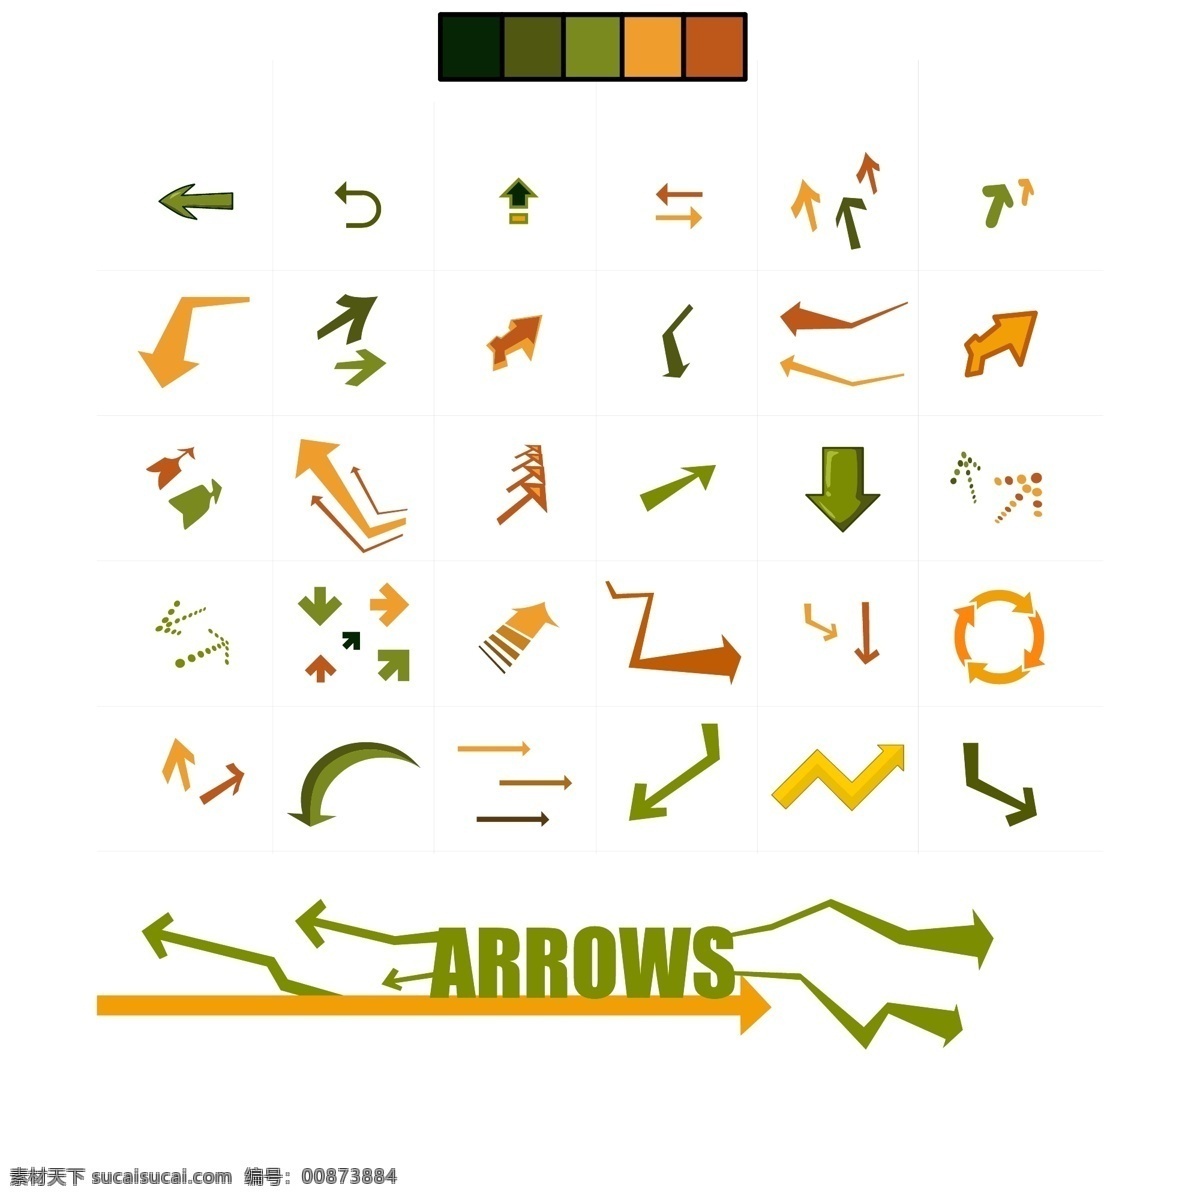 箭头图标合集 箭头 图标 矢量 各种箭头 彩色箭头符号 标志图标 其他图标